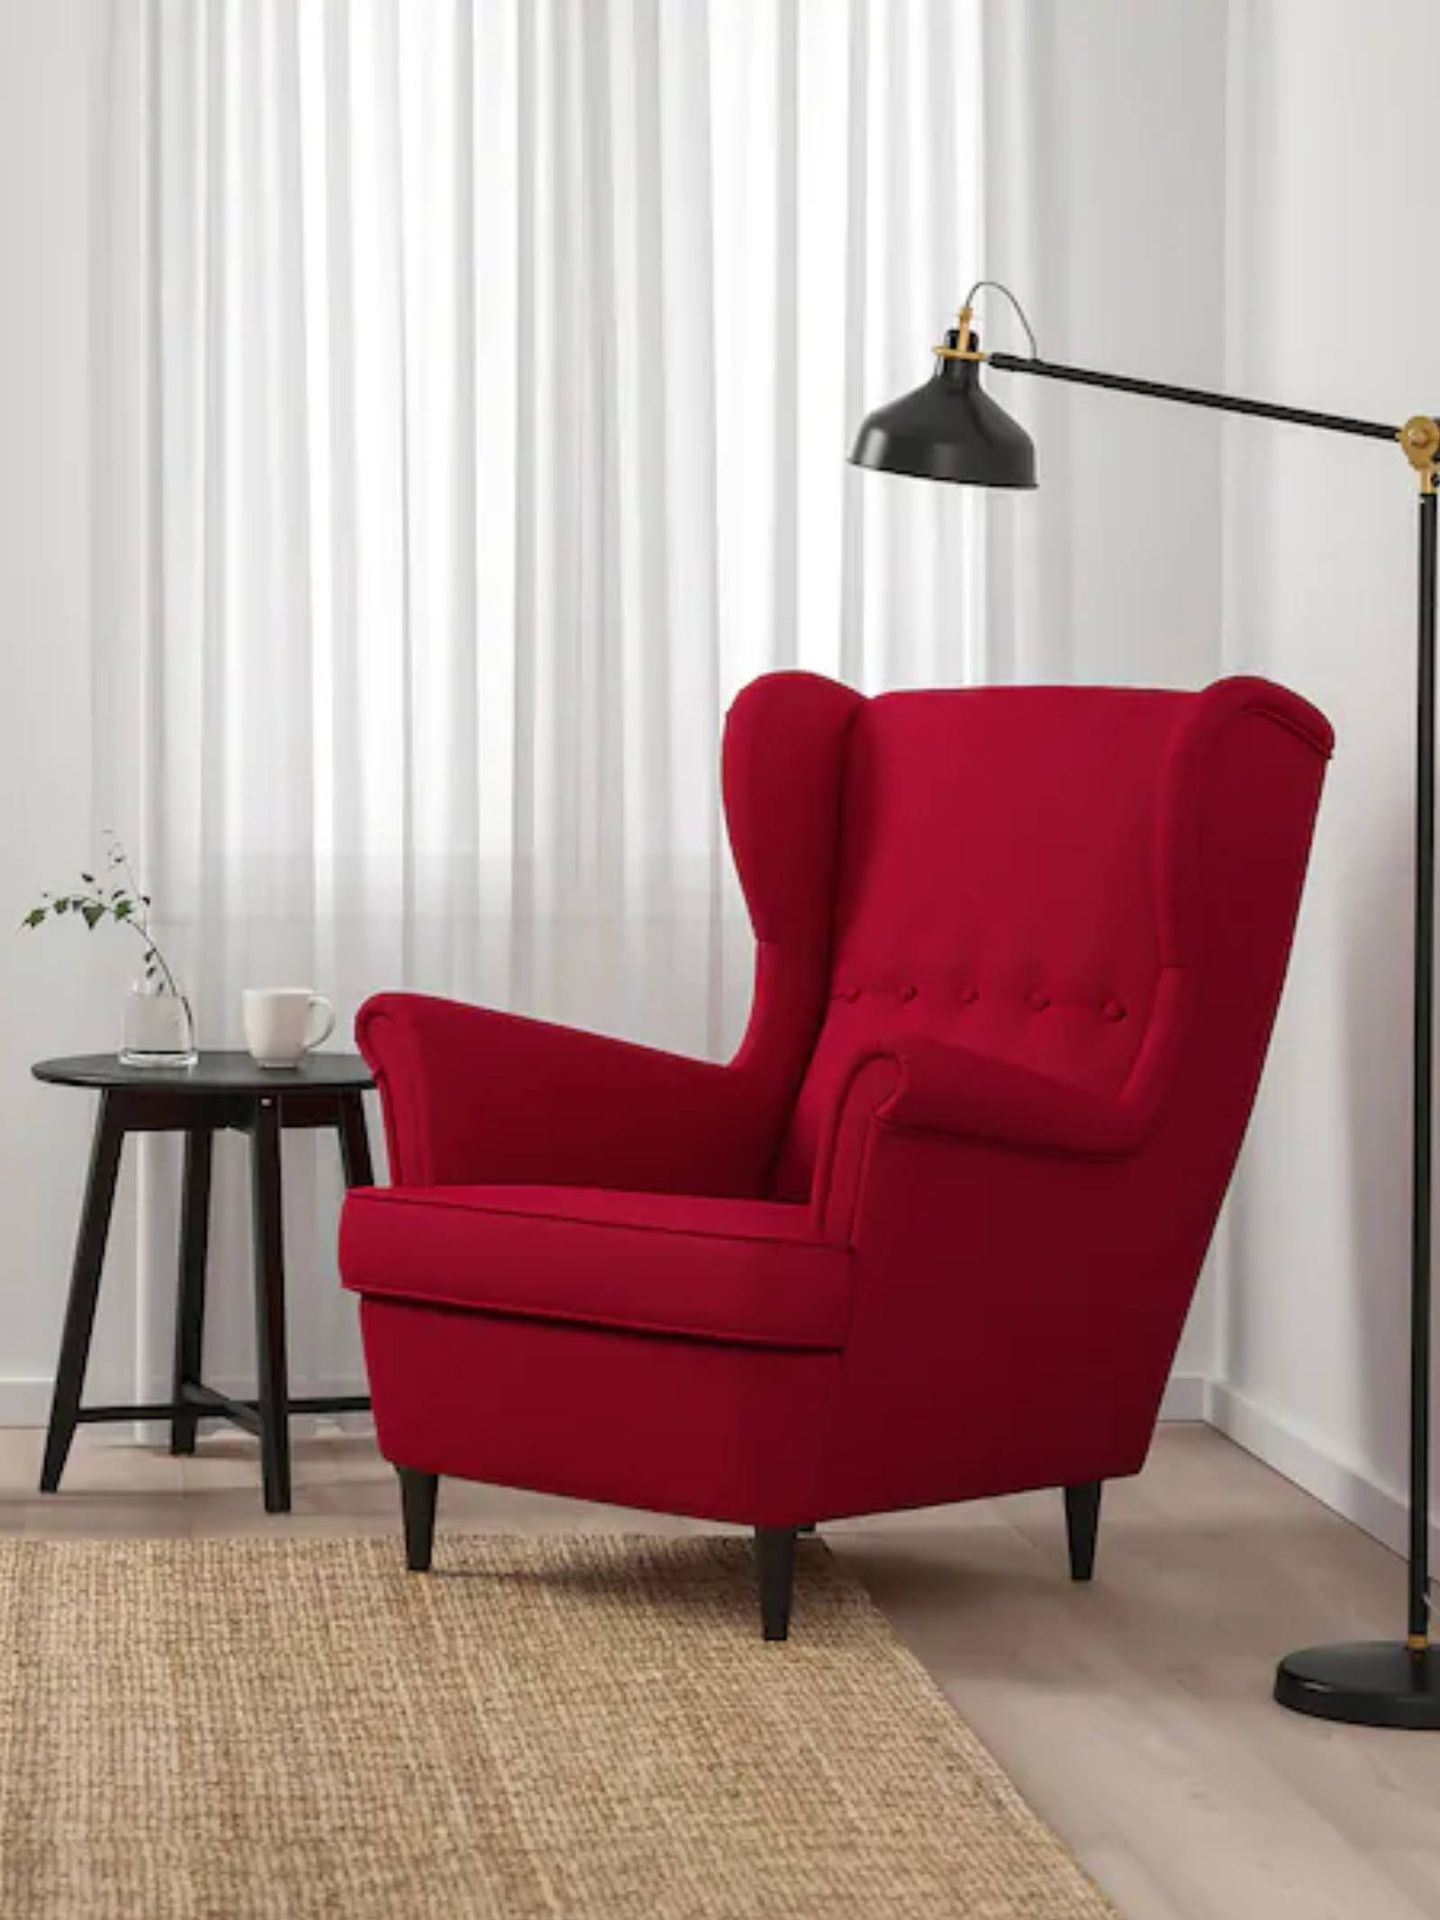 Decora con estos sillones de Ikea tu rincón de lectura perfecto. (Cortesía)